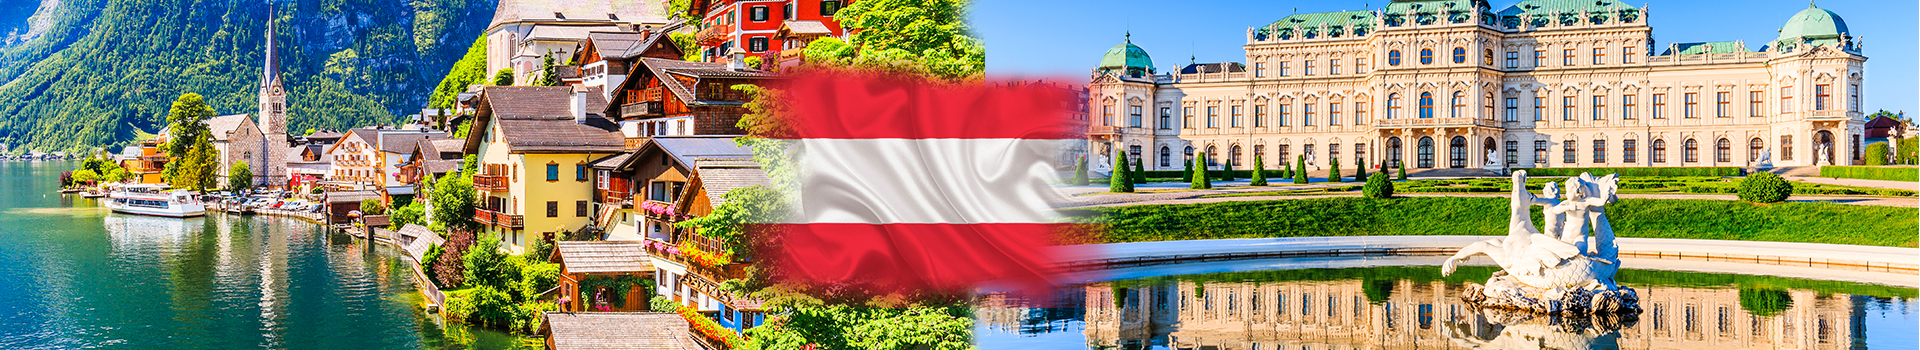 Avusturya vizesi için gerekli evraklar 2021